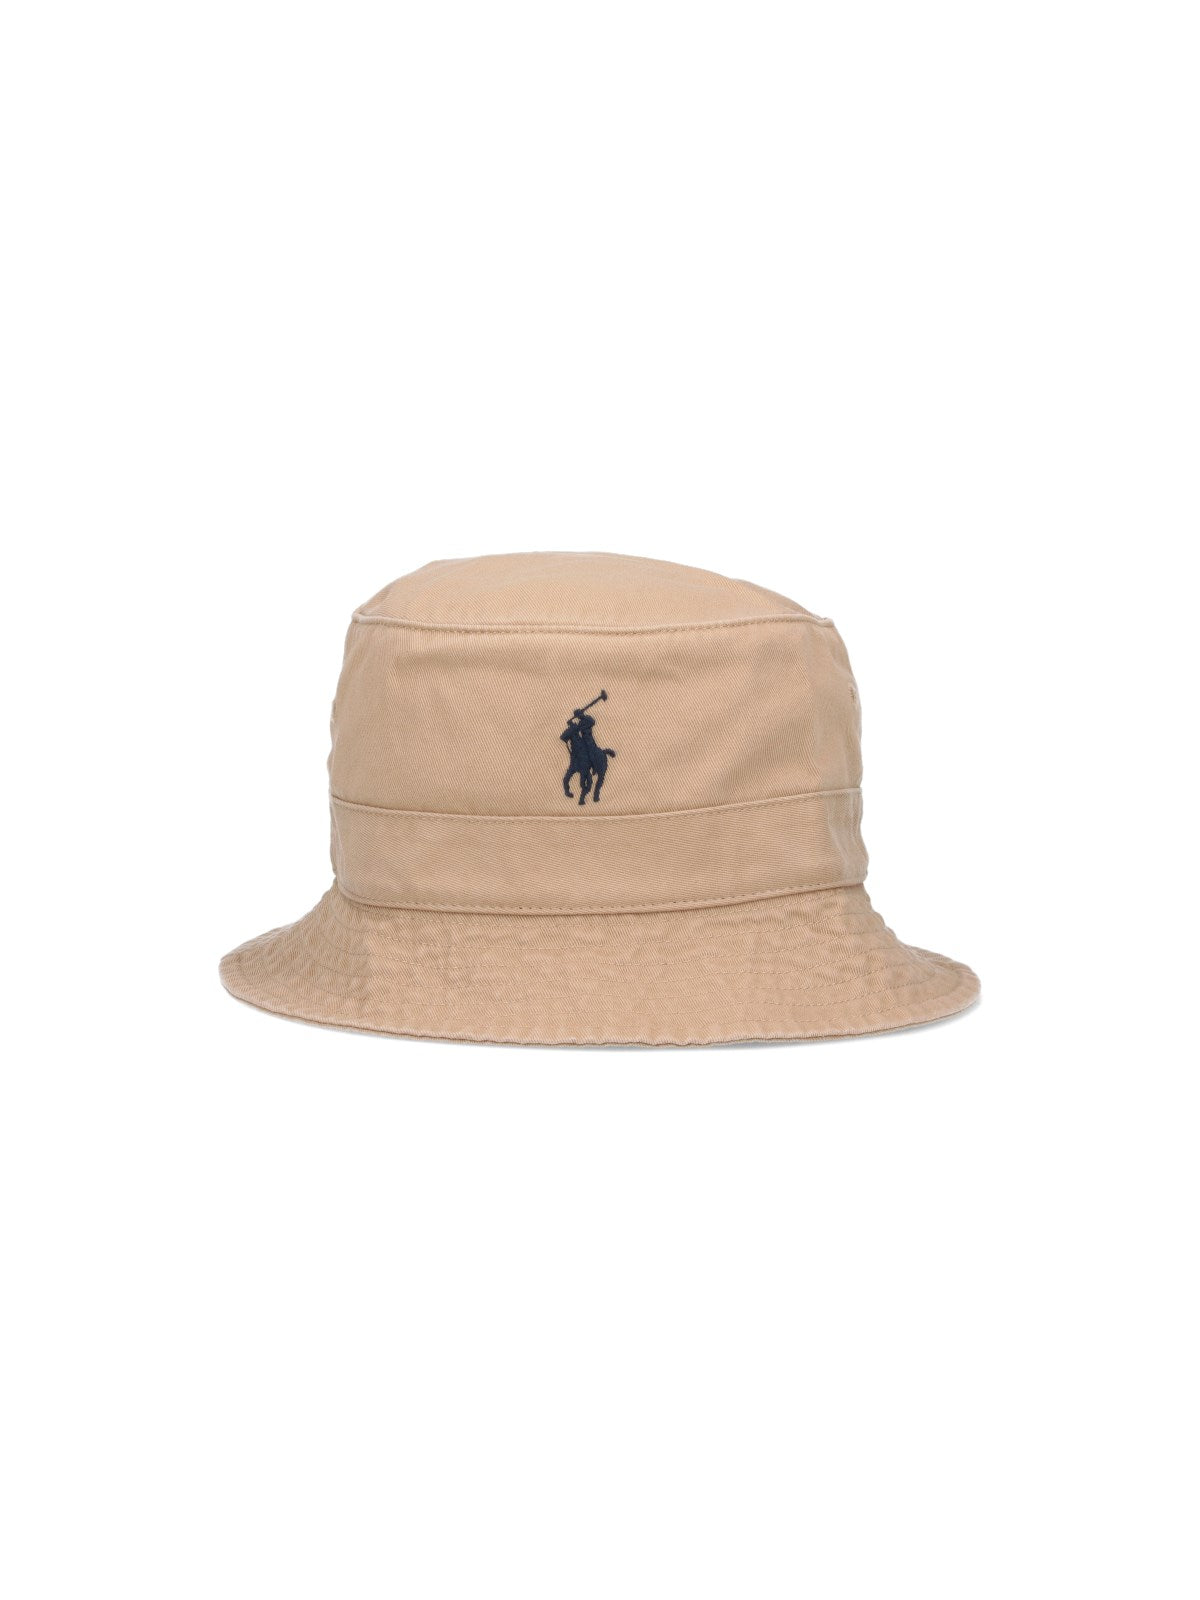 Polo Ralph Lauren Cappello bucket logo-cappelli-Polo Ralph Lauren-Cappello bucket logo Polo Ralph Lauren, in cotone beige, ricamo logo blu fronte, visiera-Dresso